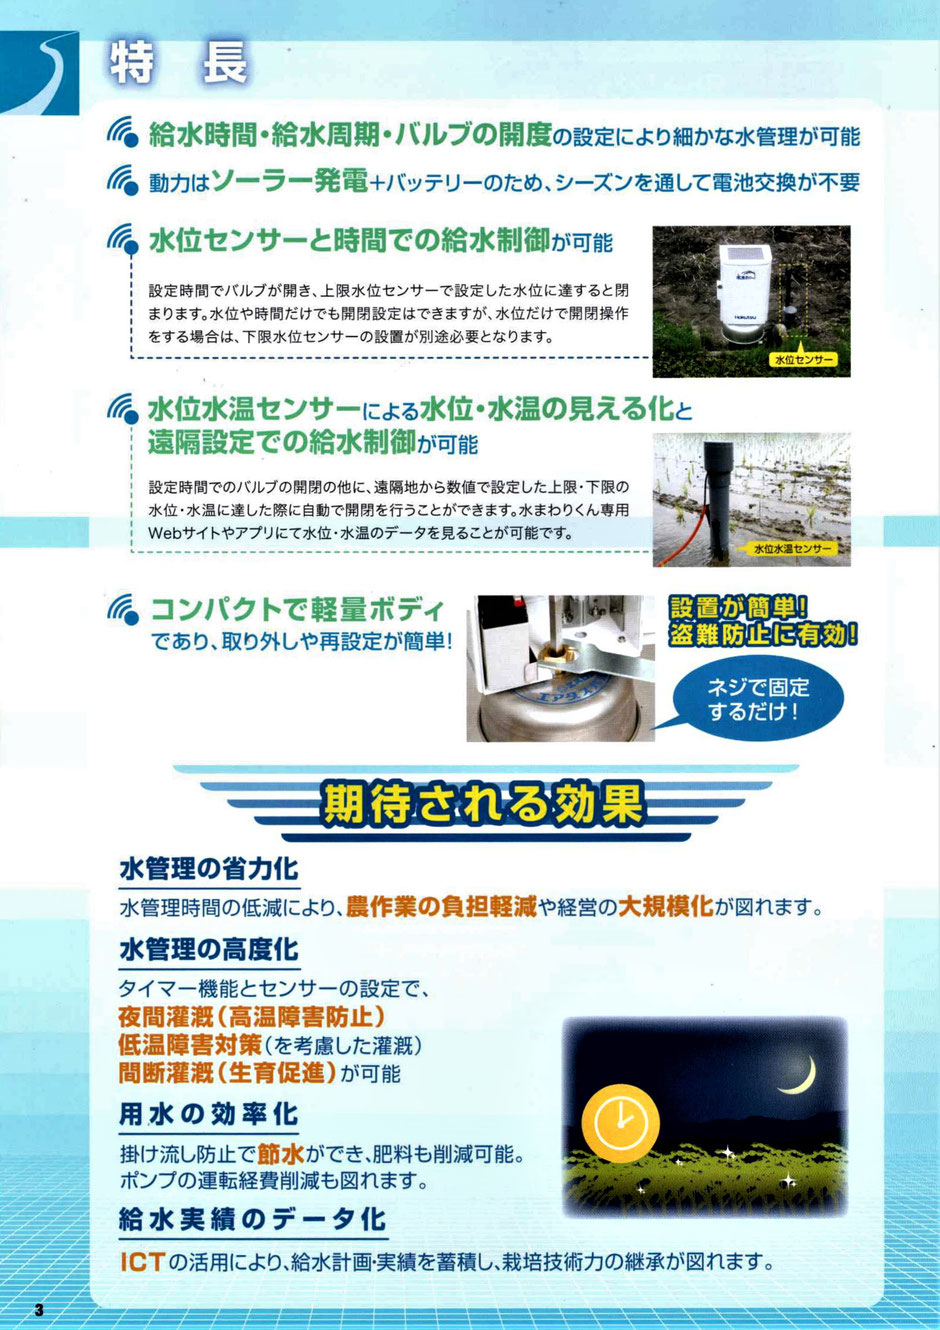 水田水管理省力化システムをご紹介するページです。